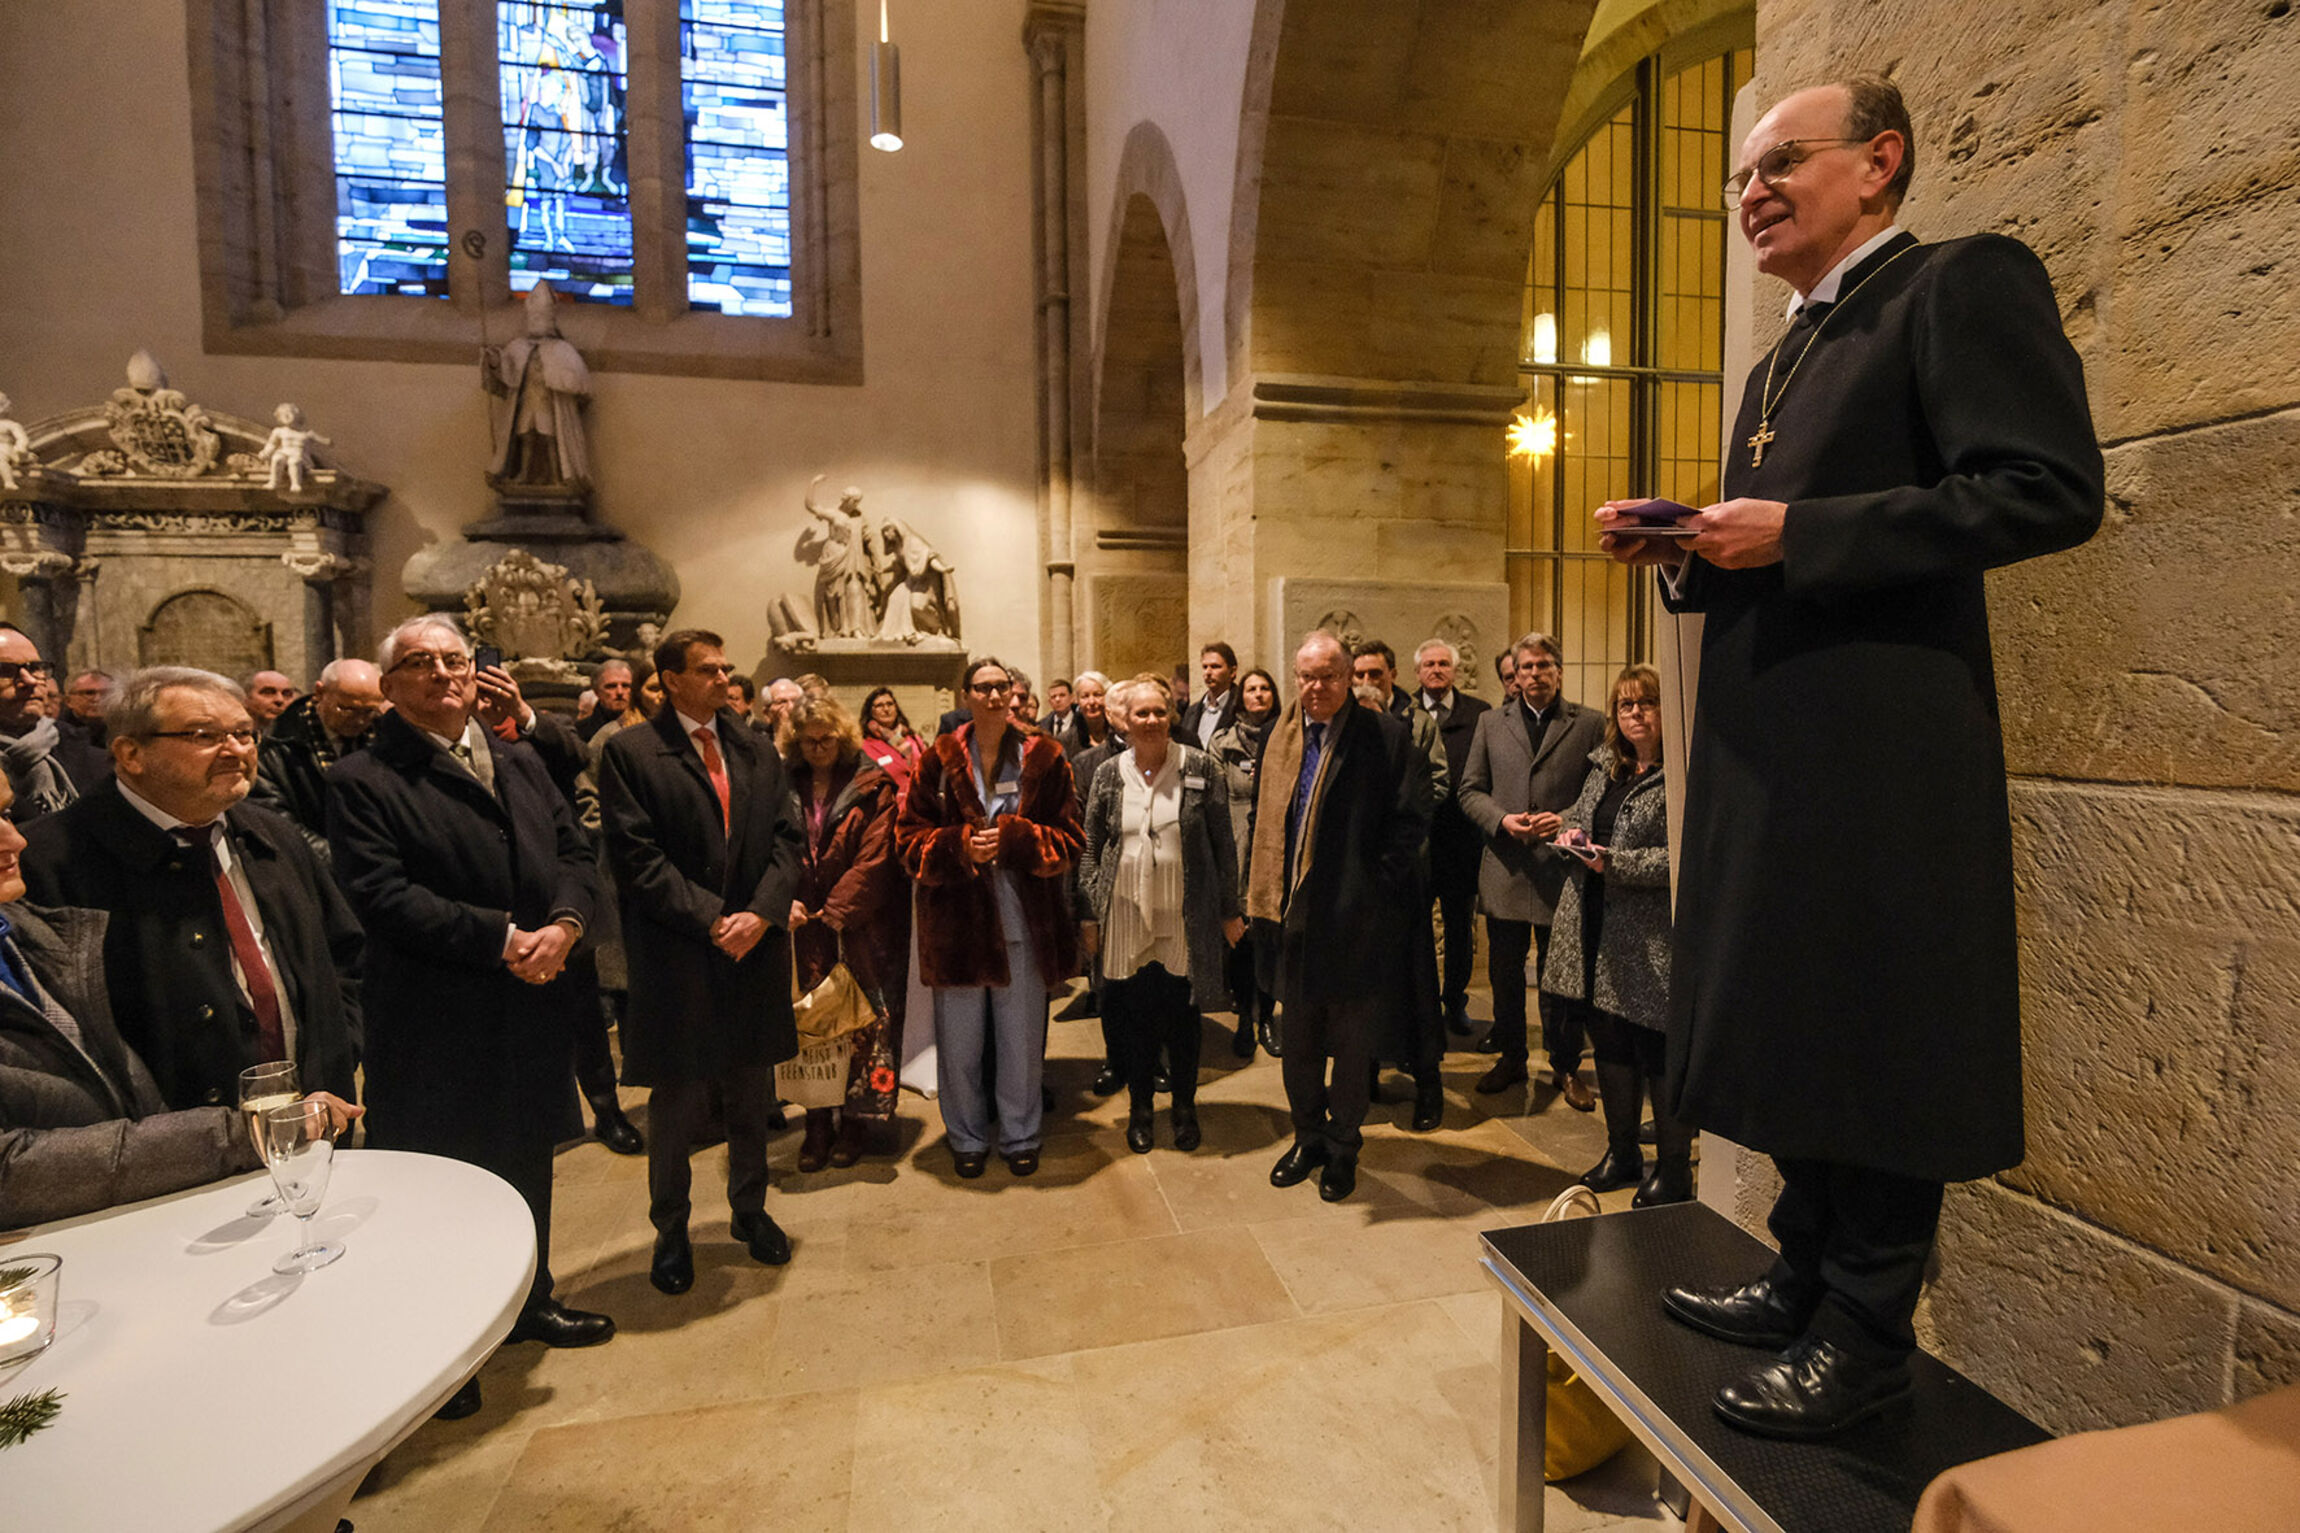 Landesbischof Ralf Meister (rechts) begrüßt etwa 140 Gäste zum Epiphanias-Empfang in Loccum. Foto: Jens Schulze/Landeskirche Hannovers